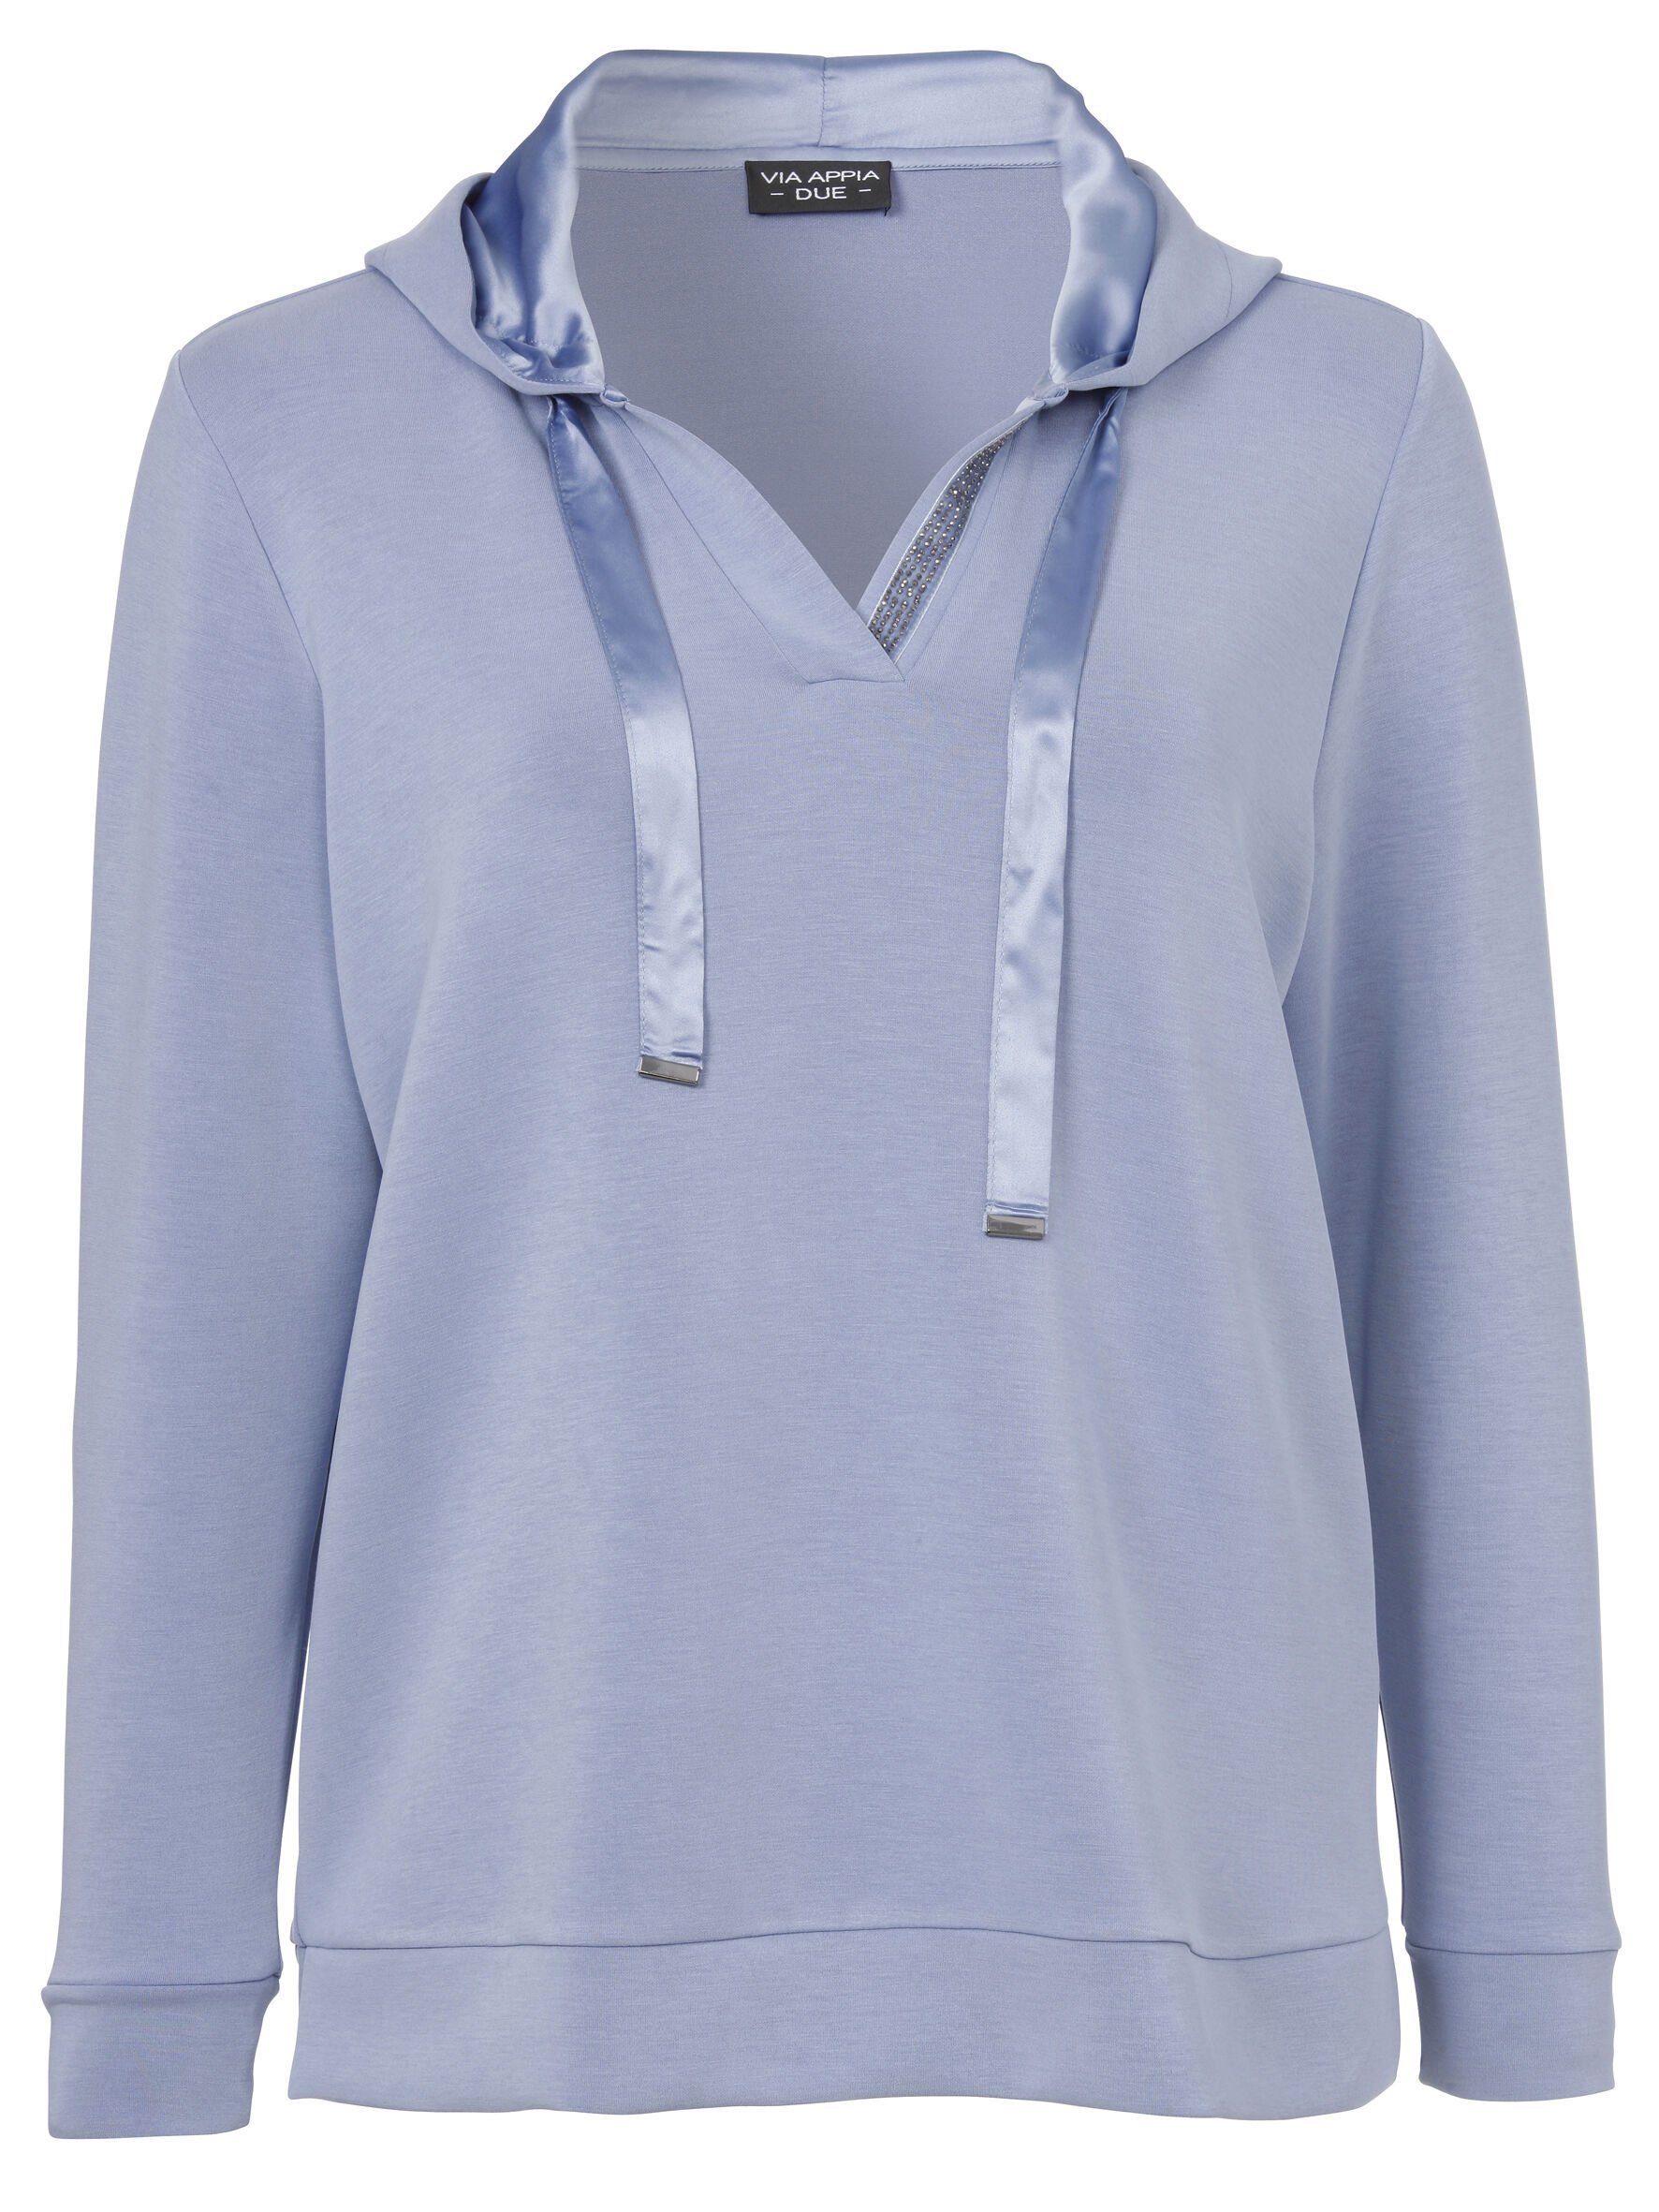 Sweatshirt mit Stil APPIA DUE unifarbenem Sportives Viskosemischung Sweatshirt VIA in rauchblau hochwertigen